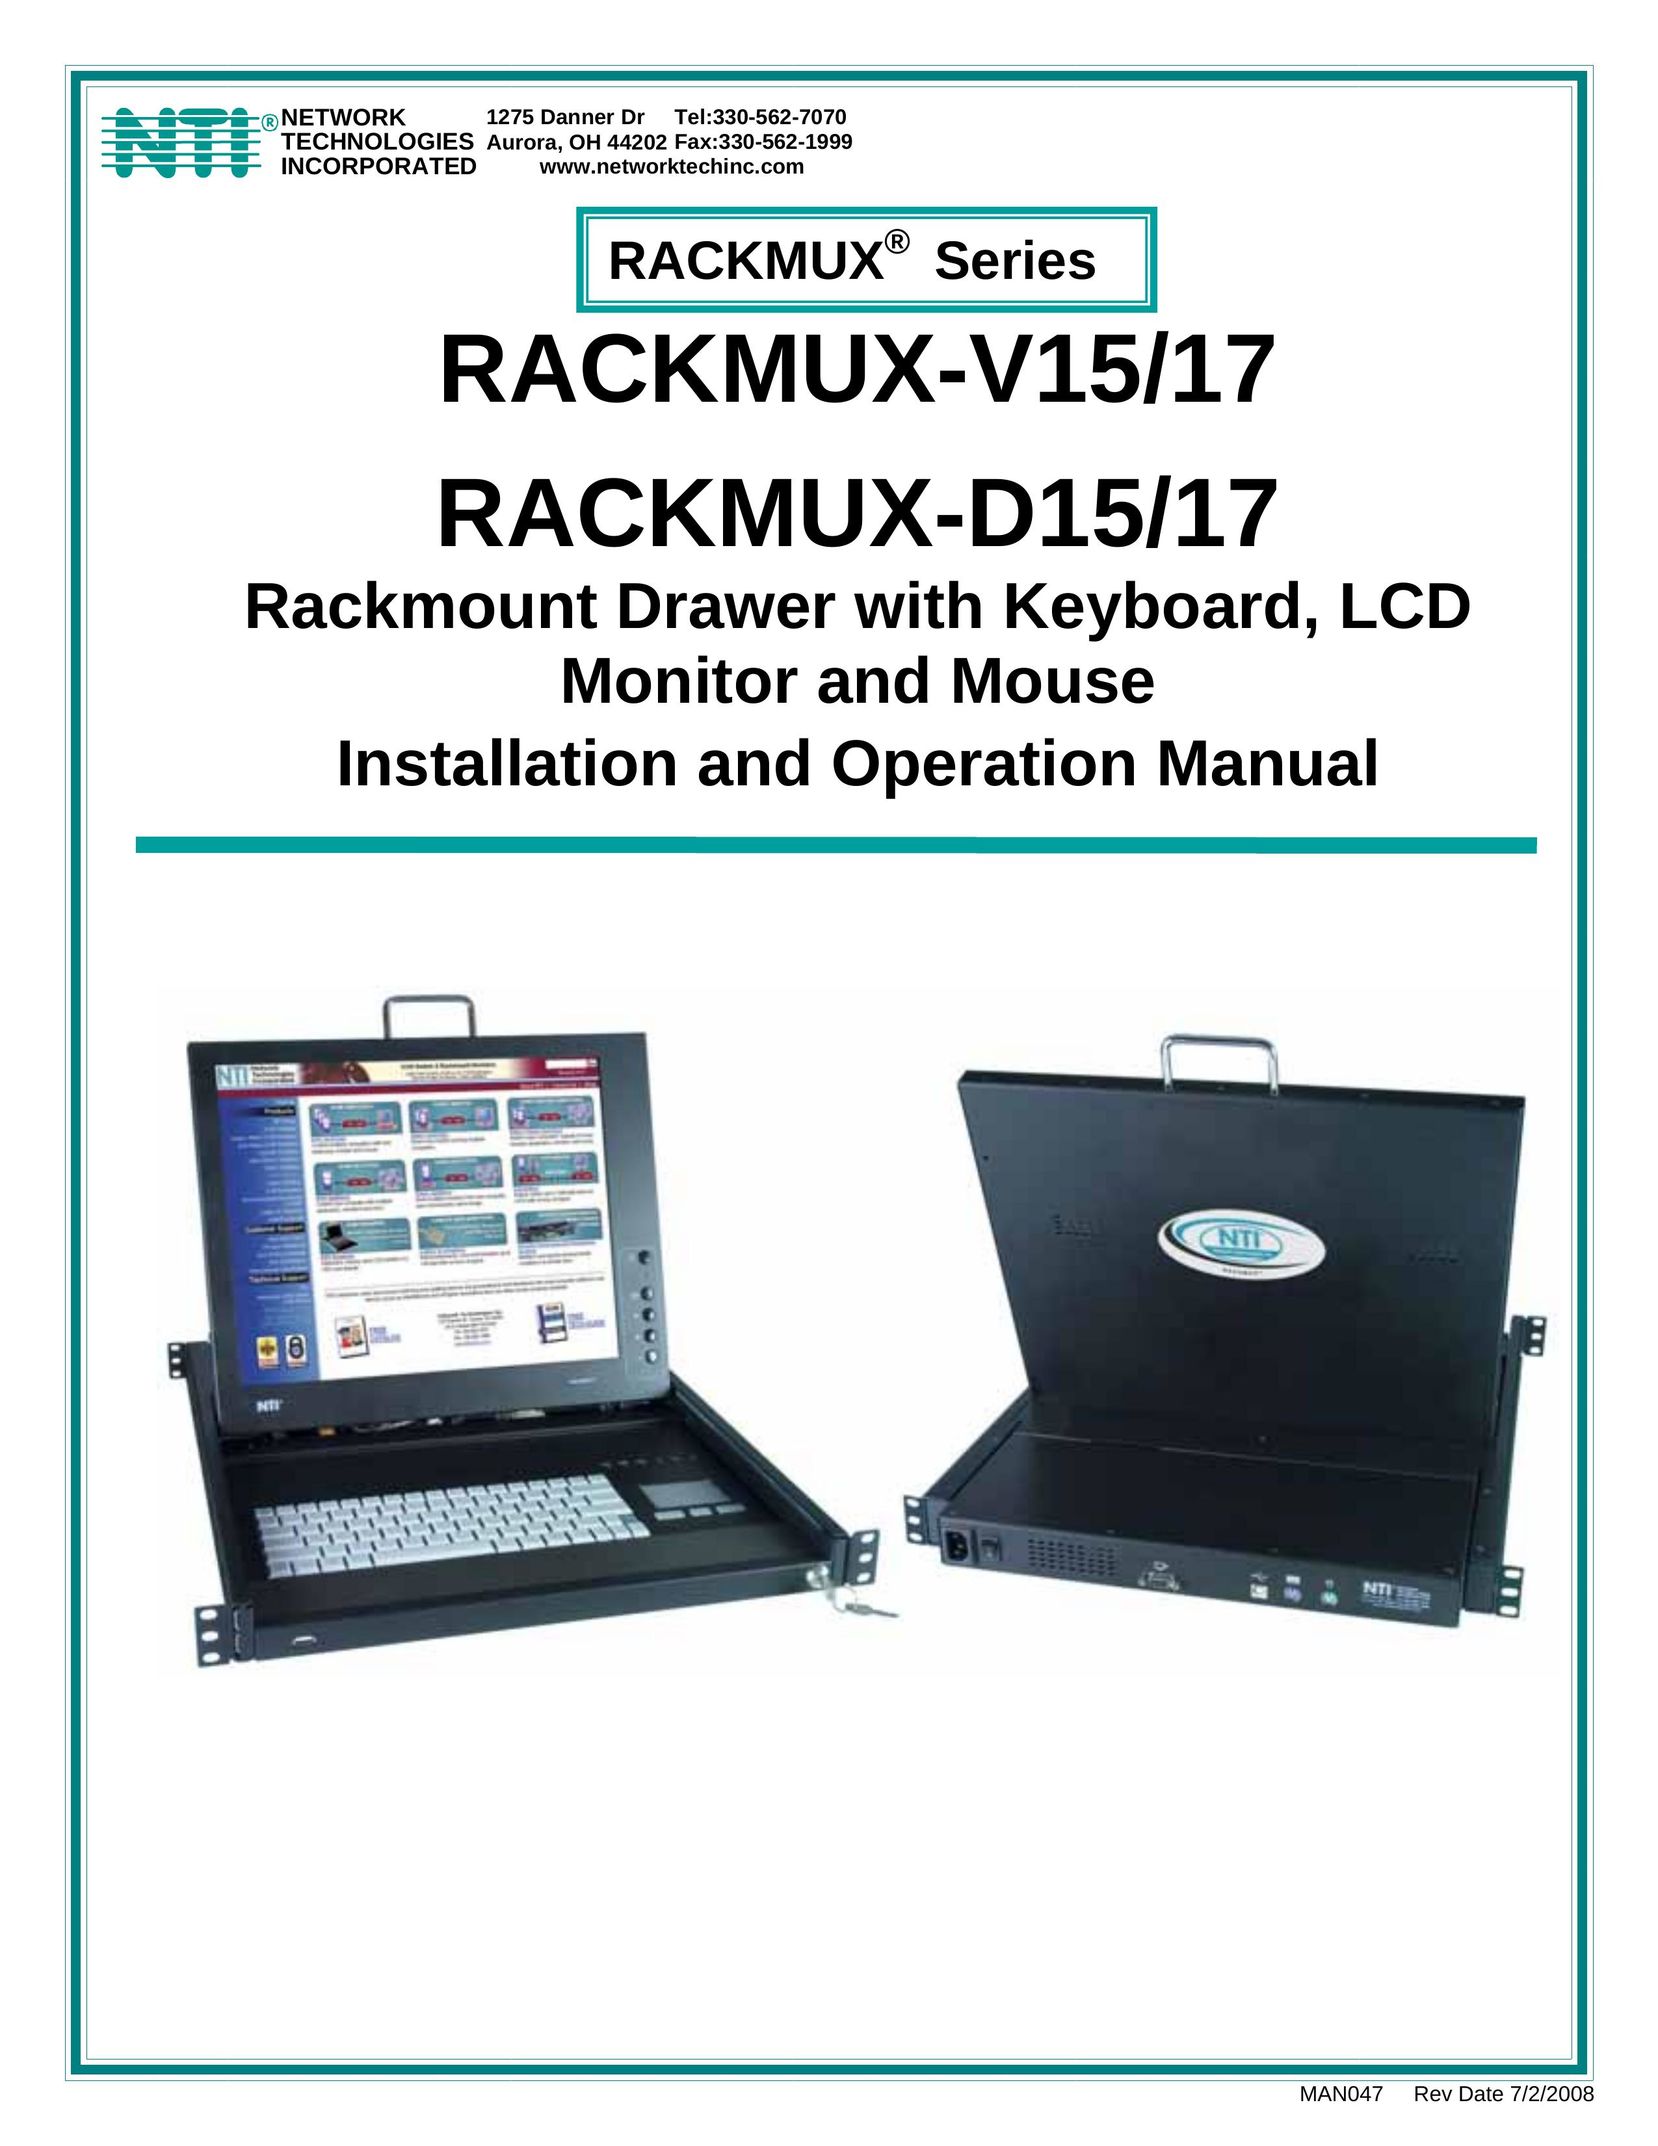 Network Technologies Rackmux-V15/17 Laptop User Manual